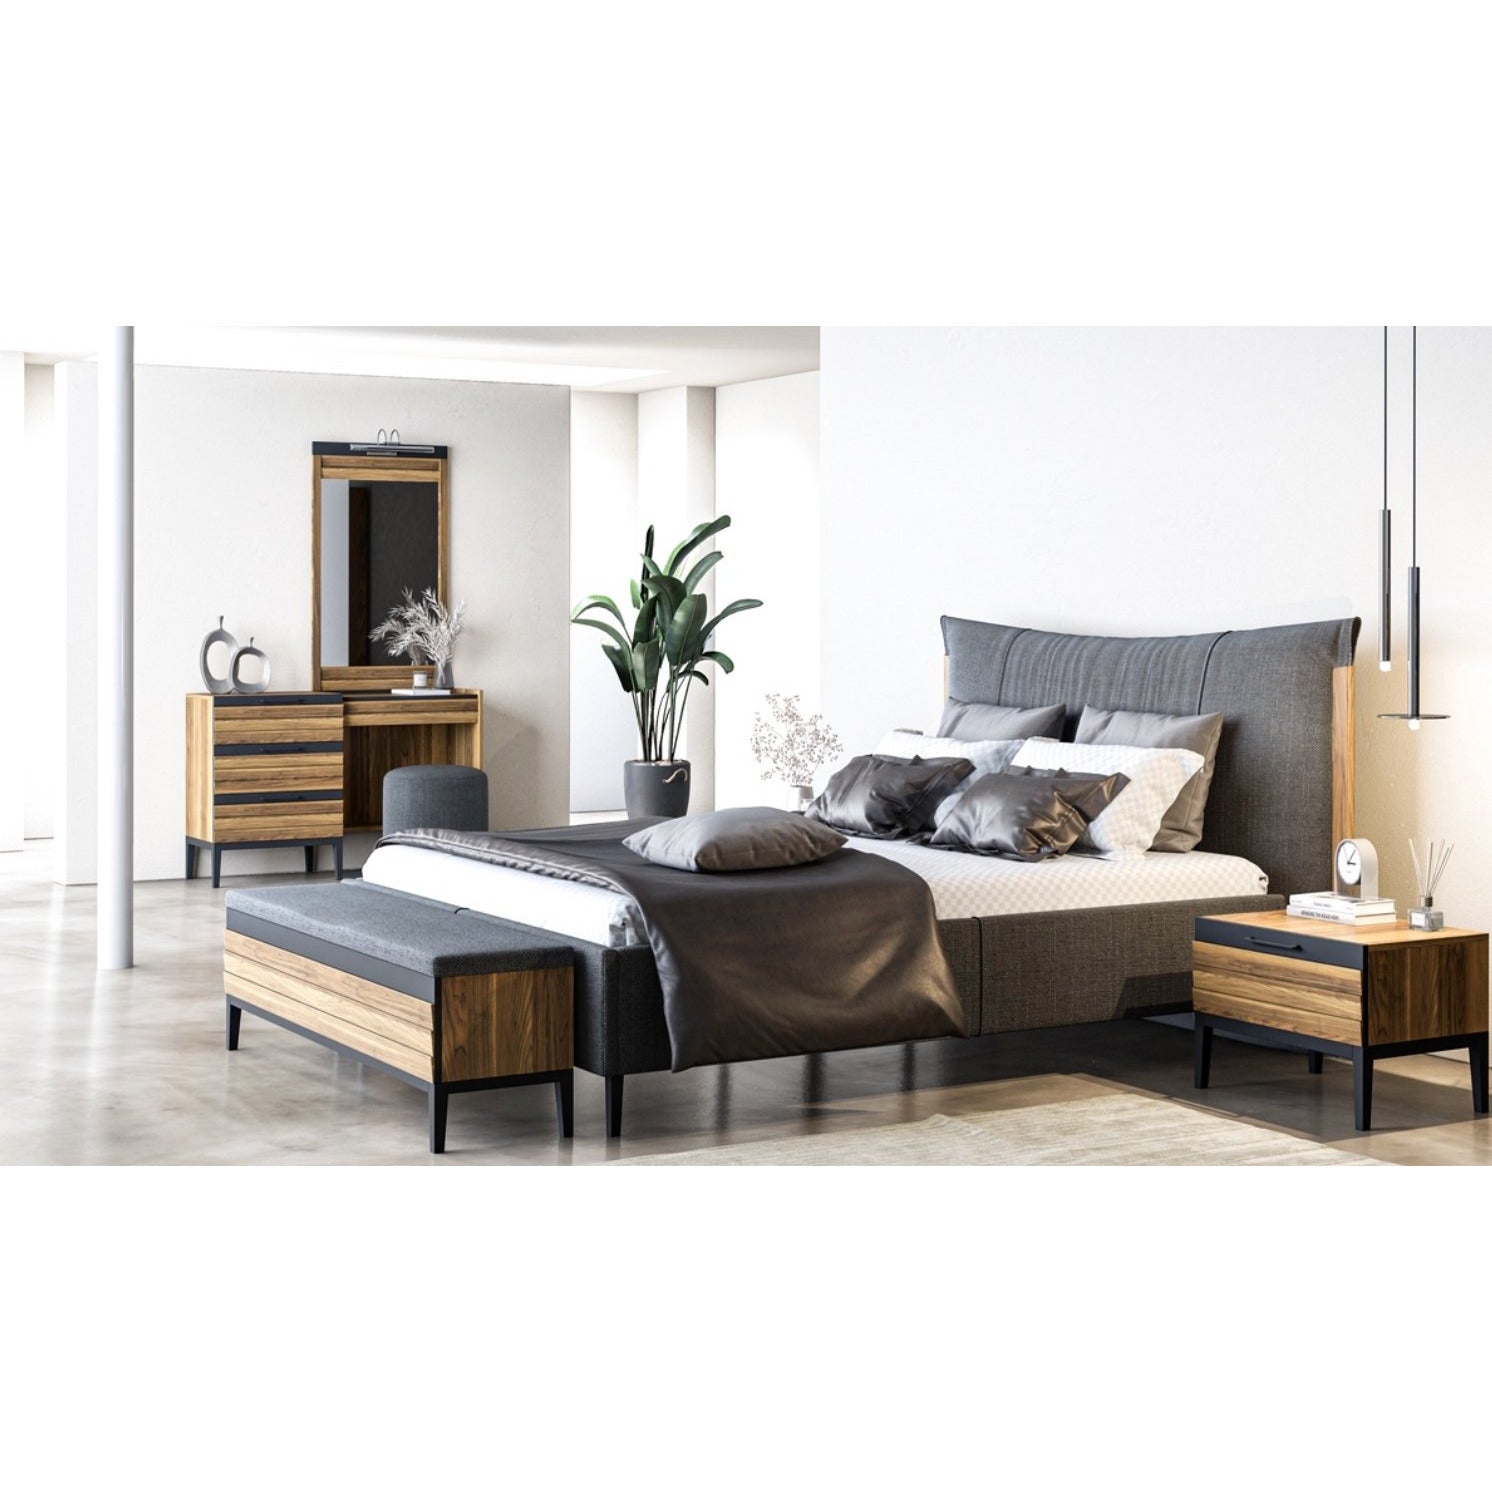 Arman Säng med Förvaring - LINE Furniture Group